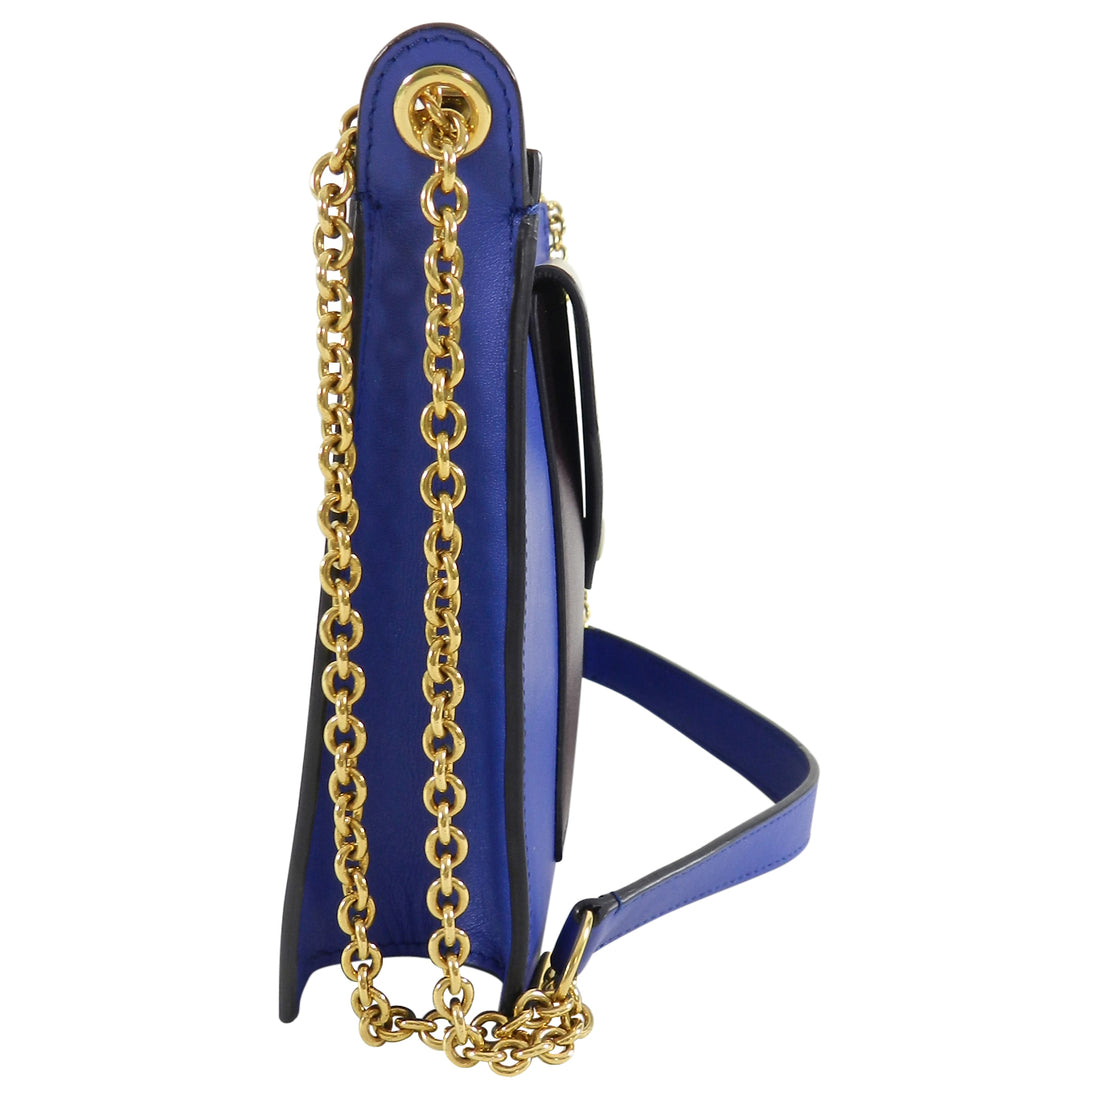 Celine Tricolor Blue Burgundy Taupe Bag with Pocket